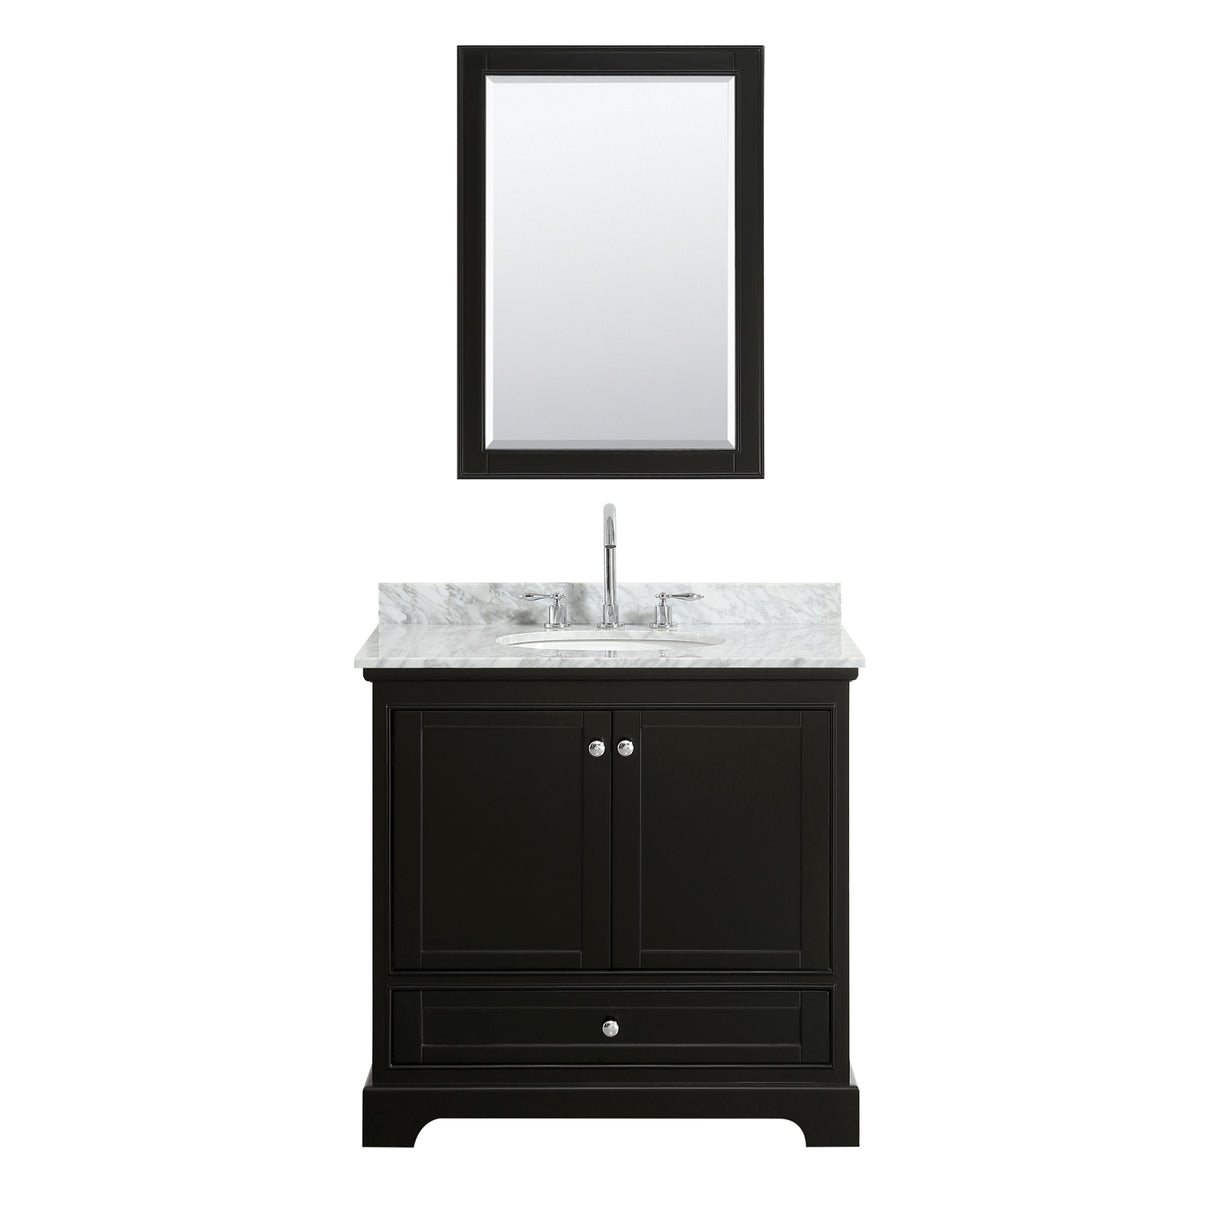 Deborah 36 Inch Single Bathroom Vanity in Dark Espresso White Carrara Marble Countertop Undermount Oval Sink and Medicine Cabinet